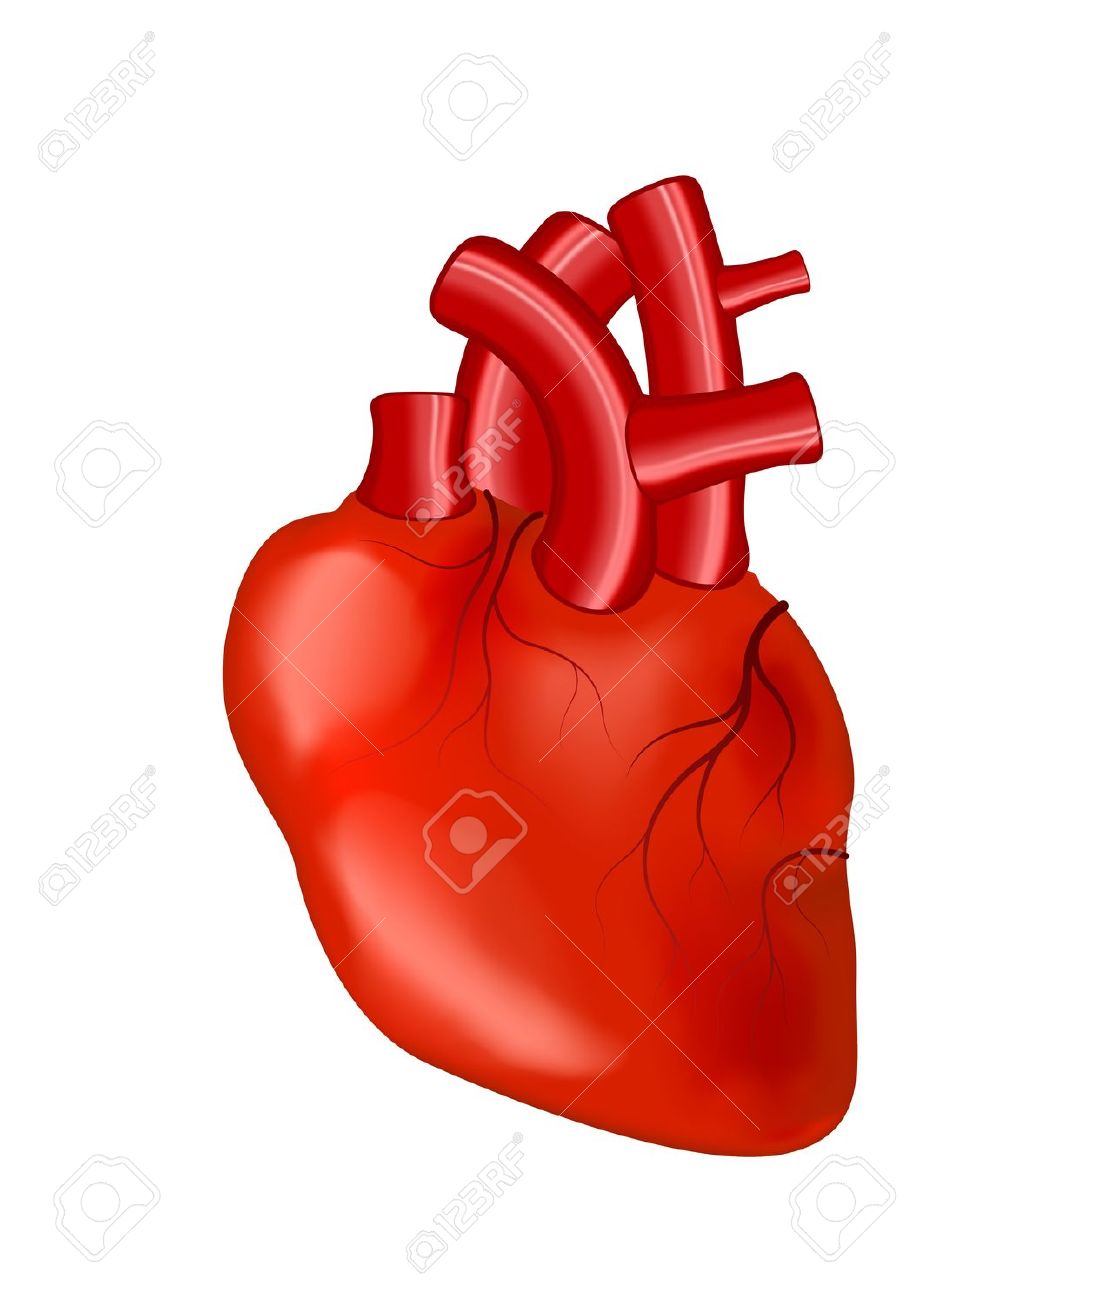 Clip Art. Human heart, eps10